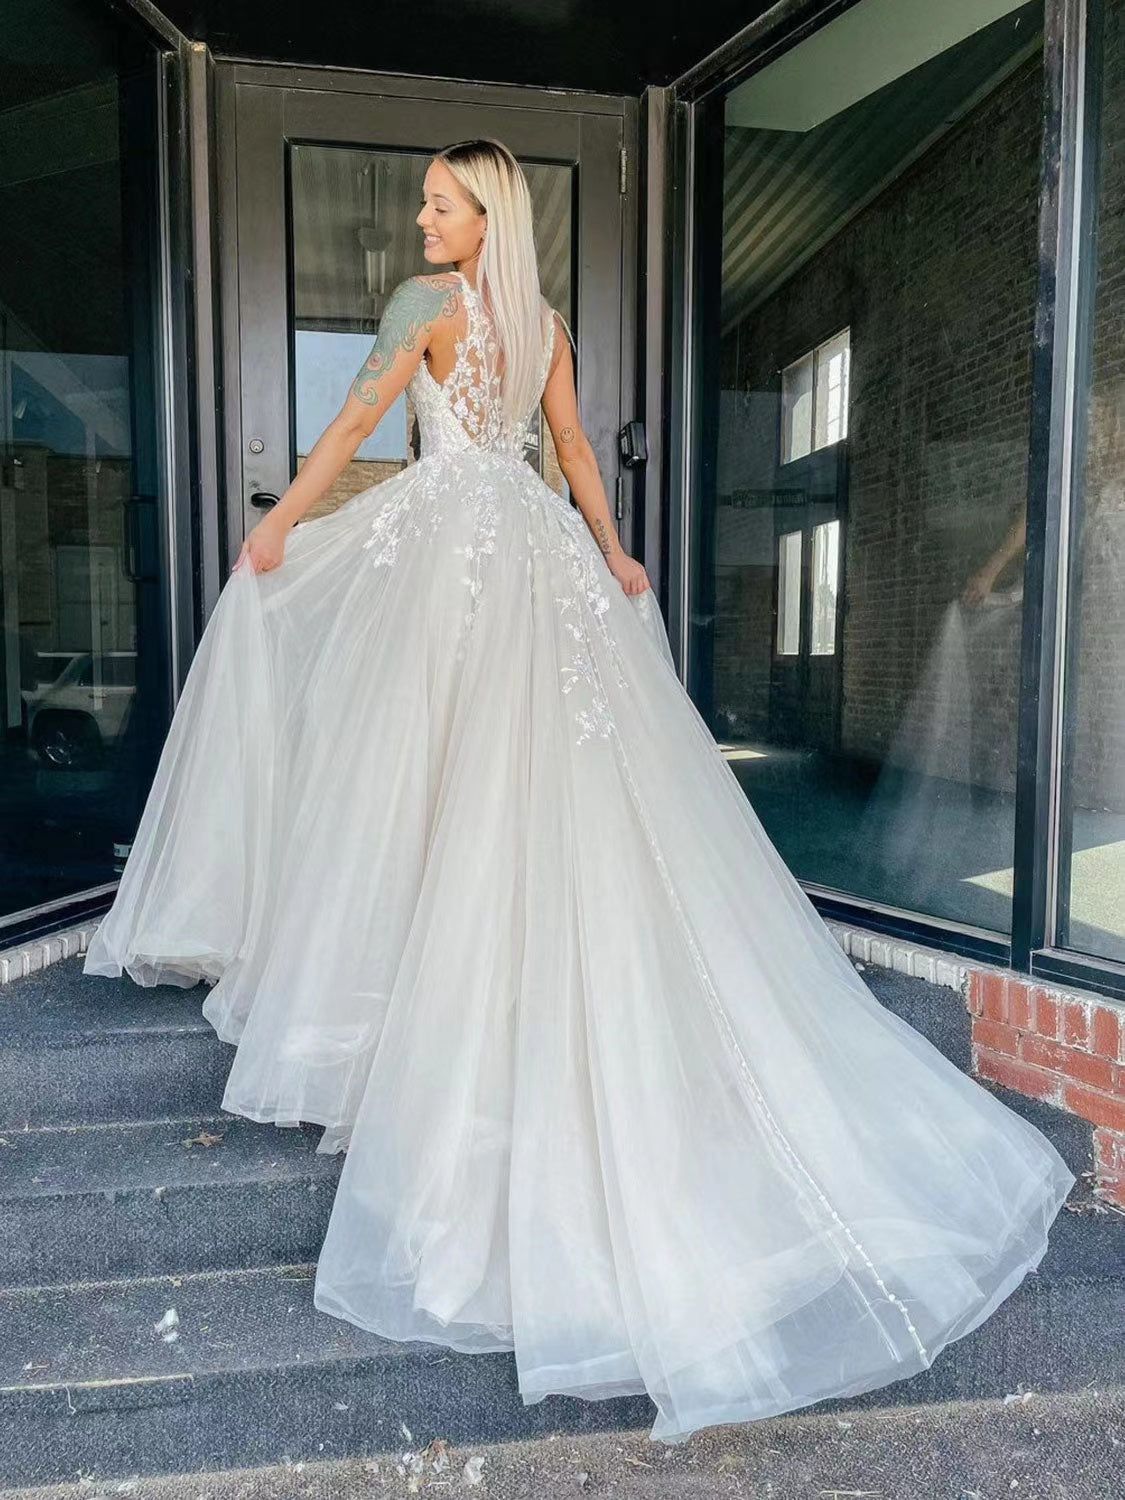 Elegant A-line Wedding Dresses, Lace Popular Design Bridal Gowns, V-neck Wedding Guest Dresses